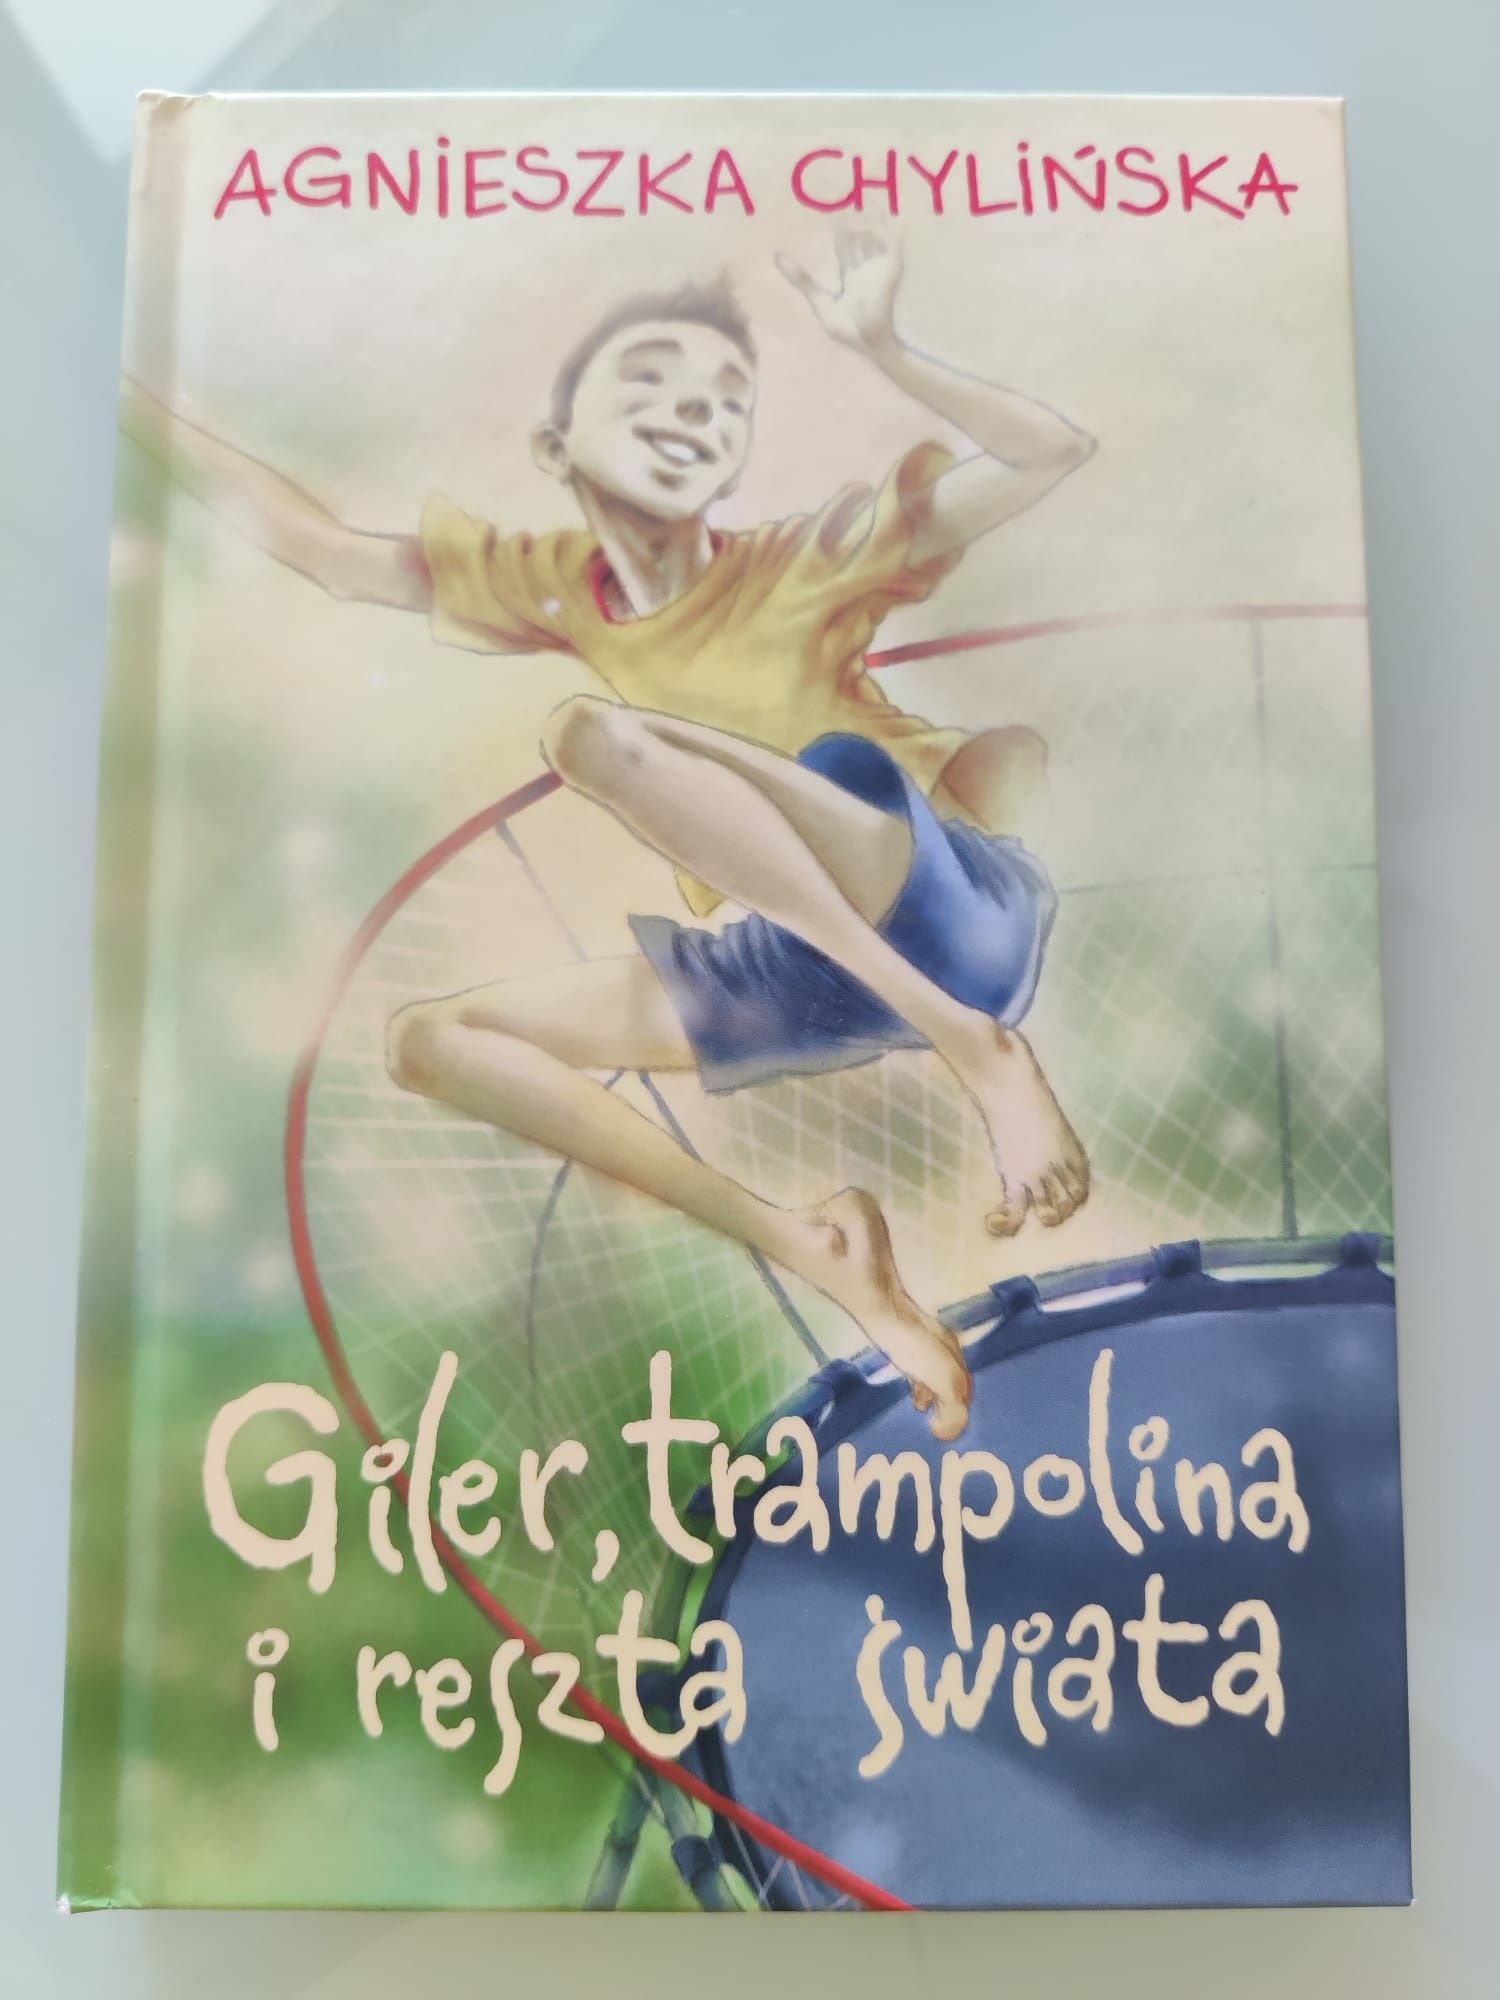 Giler, trampolina i reszta świata" Agnieszka Chylińska